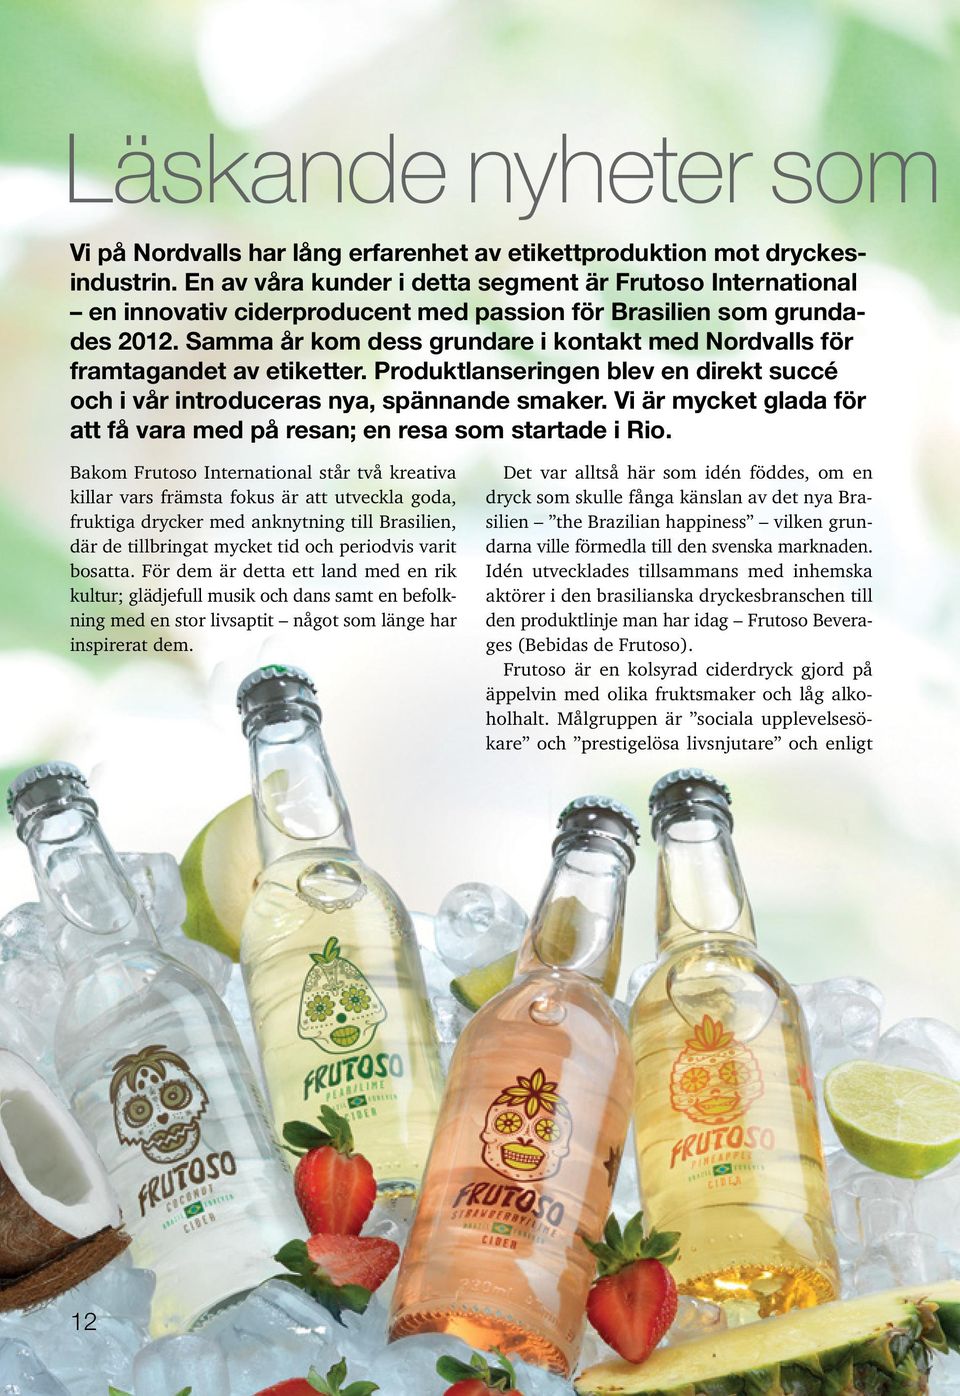 Samma år kom dess grundare i kontakt med Nordvalls för framtagandet av etiketter. Produktlanseringen blev en direkt succé och i vår introduceras nya, spännande smaker.